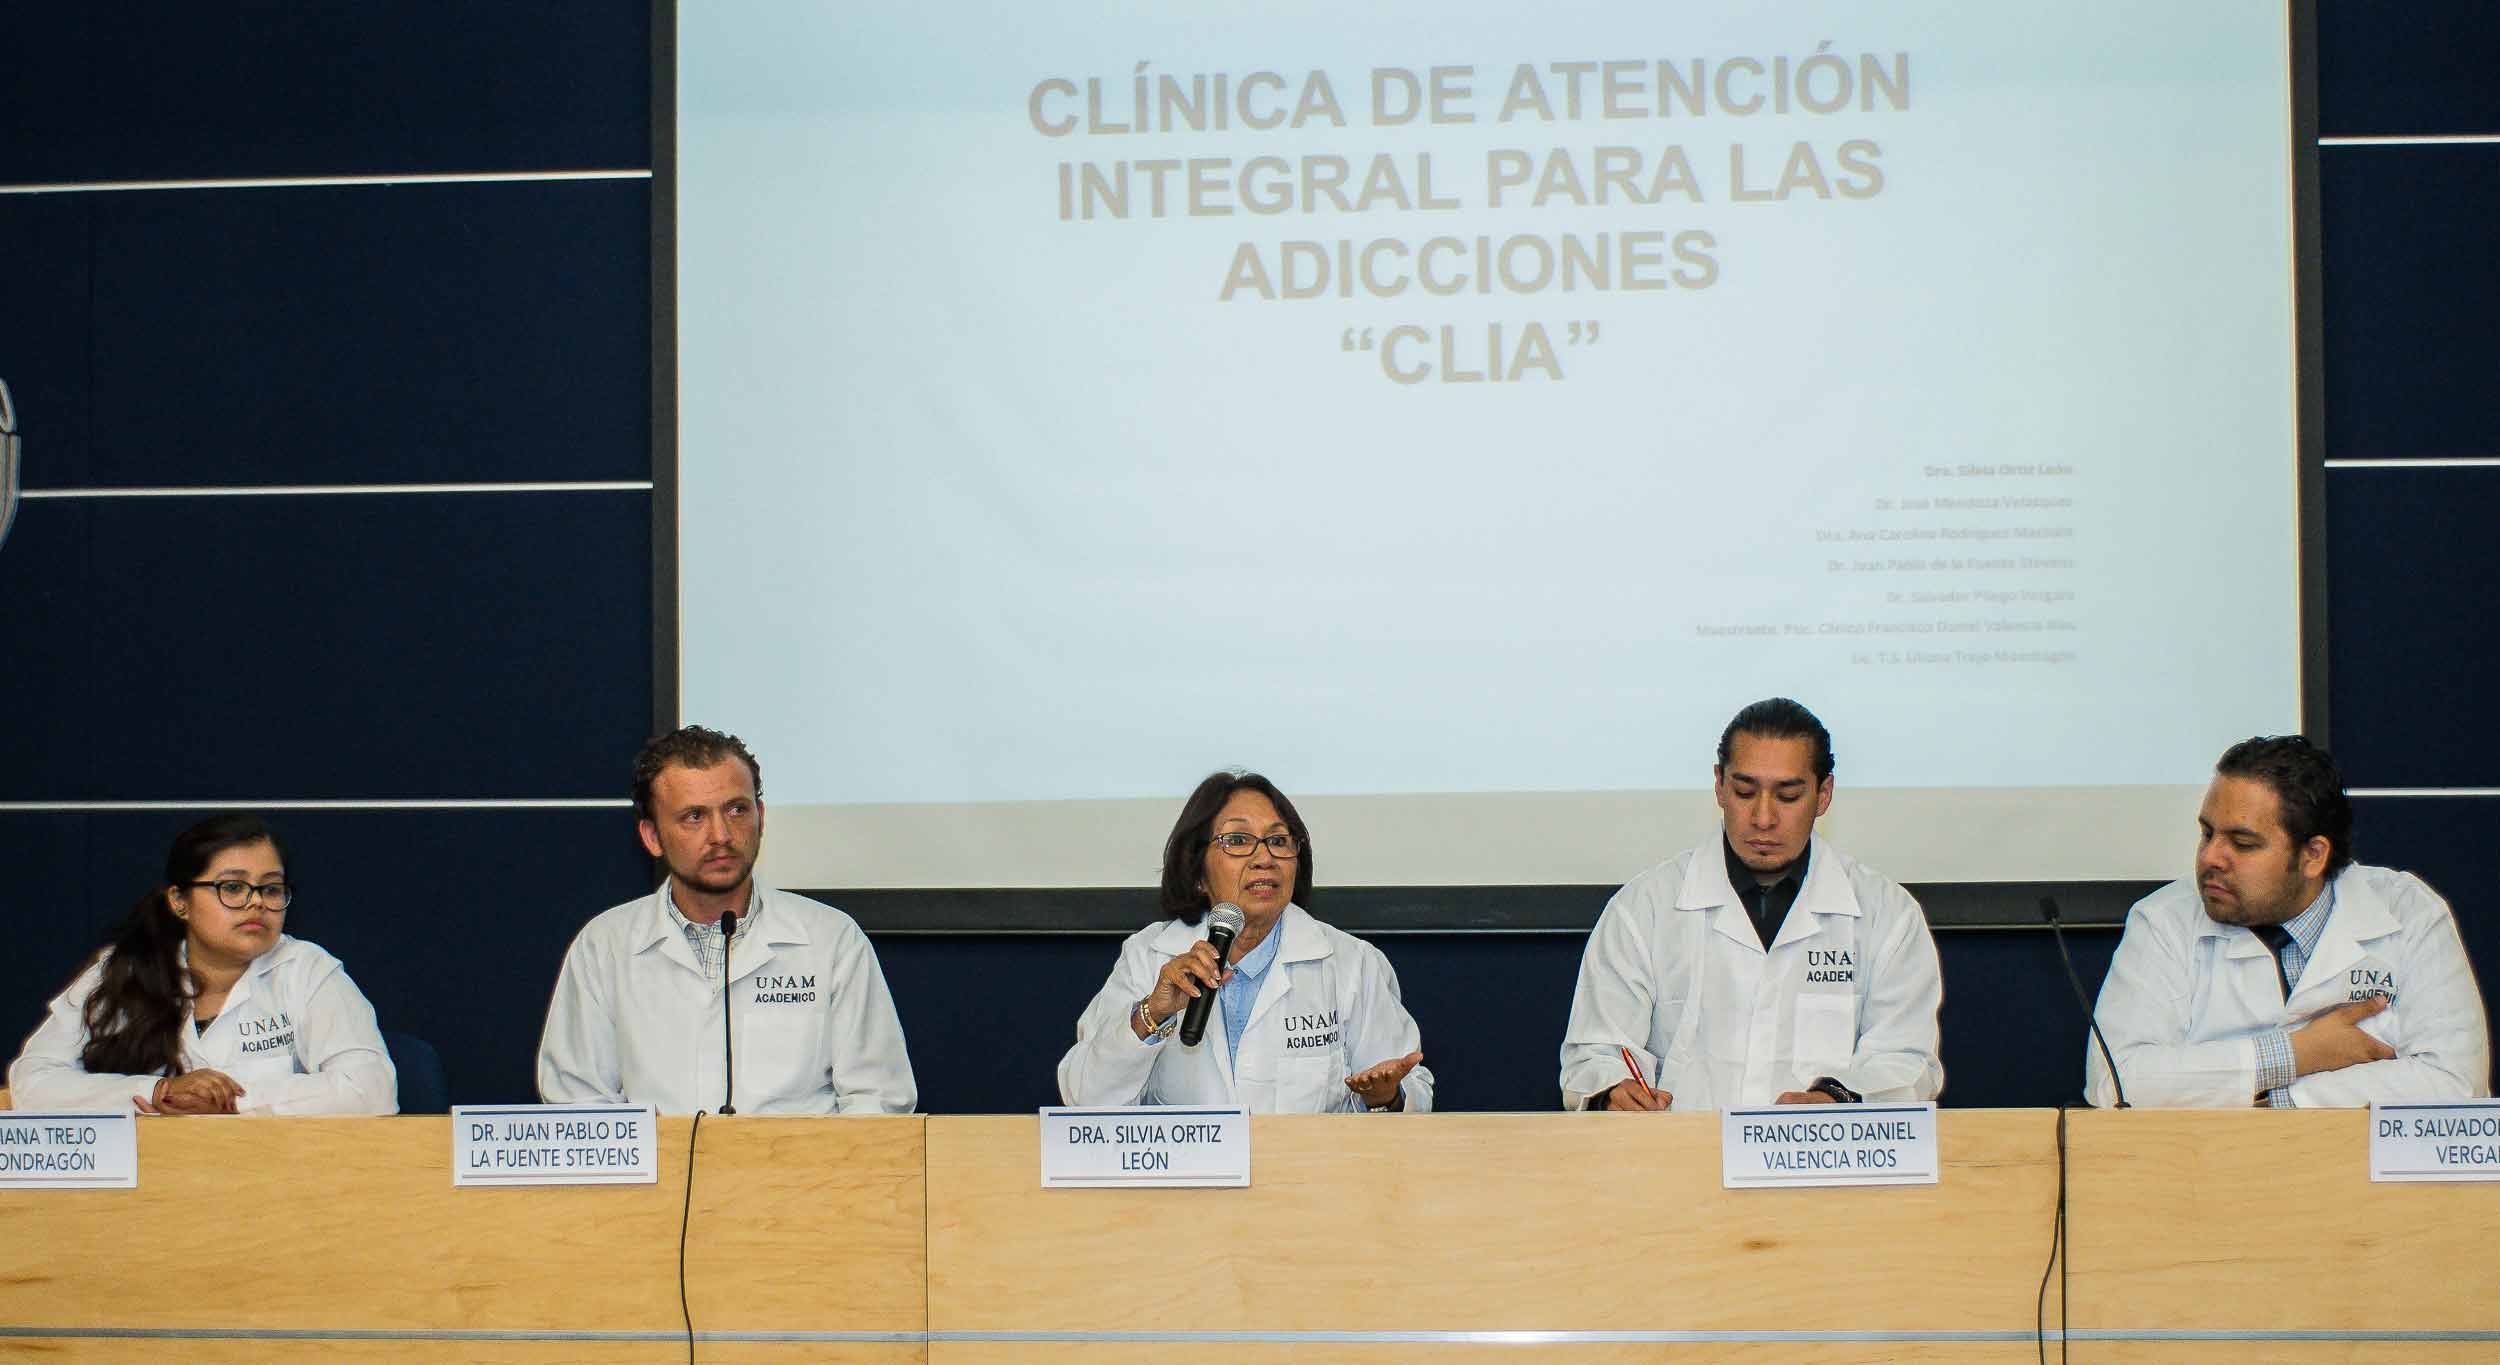 OFRECE FACULTAD DE MEDICINA DE LA UNAM ATENCIÓN INTEGRAL EN ADICCIONES